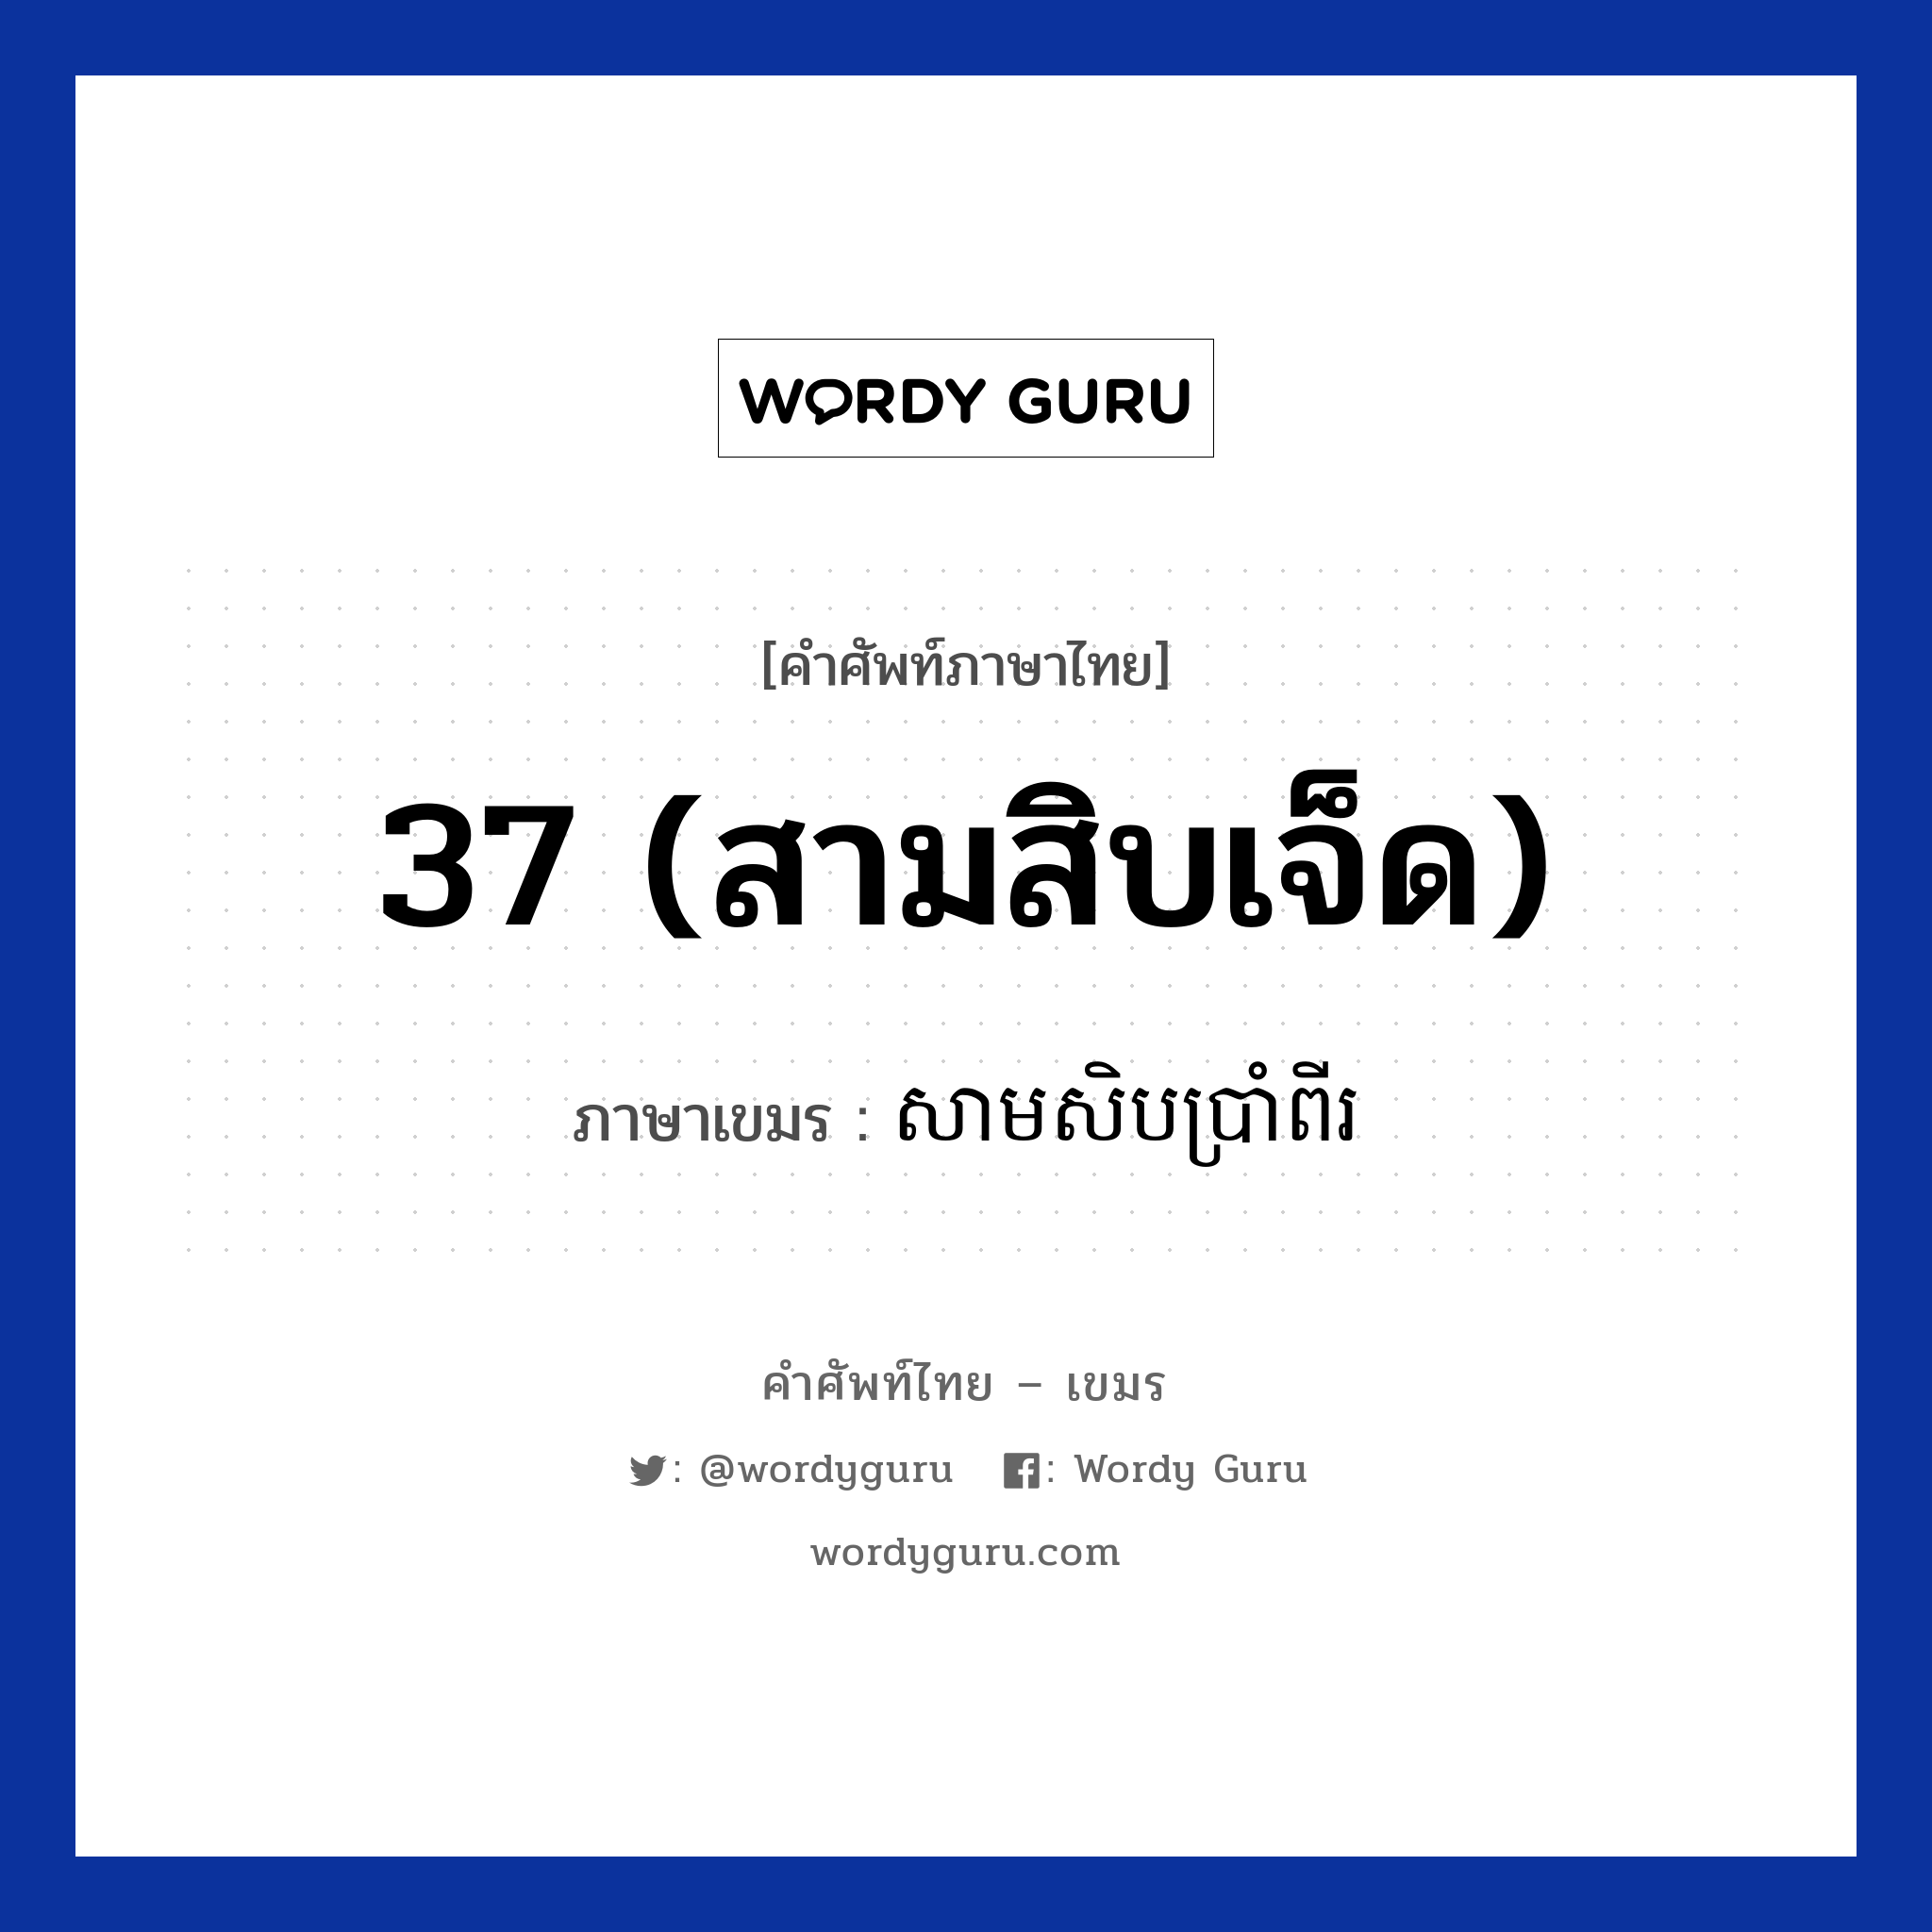 37 (สามสิบเจ็ด) แปลว่า? คำศัพท์ในกลุ่มประเภท การนับเลข, คำศัพท์ภาษาไทย - เขมร 37 (สามสิบเจ็ด) ภาษาเขมร សាមសិបប្រាំពីរ หมวด การนับเลข Samsibbrampii หมวด การนับเลข